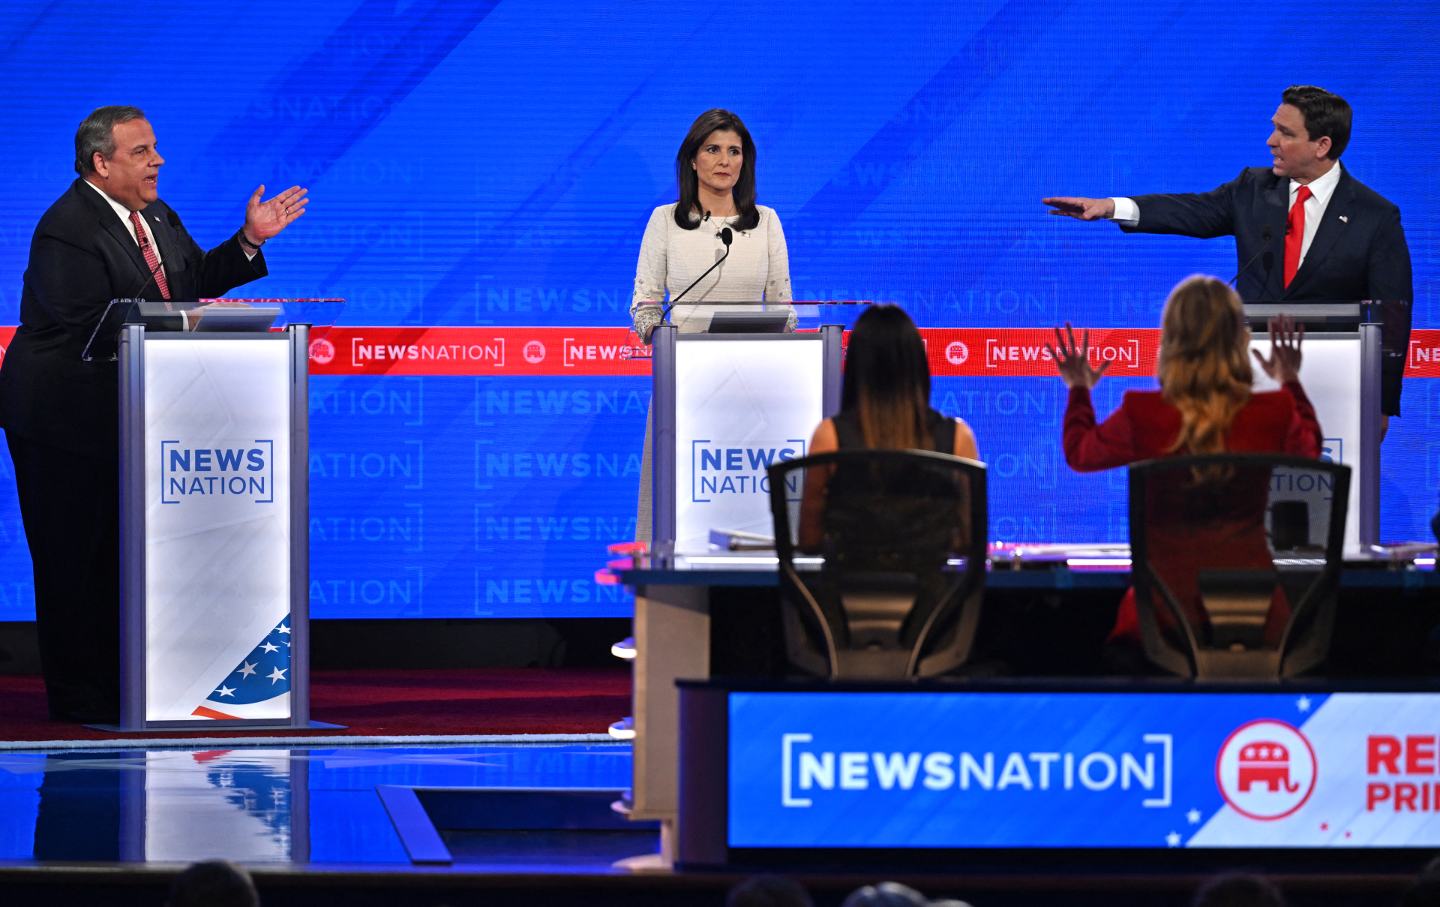 Auf der Debattenbühne gestikulieren und zeigen Chris Christie und Ron DeSantis aufeinander, während Nikki Haley zwischen ihnen zuschaut.